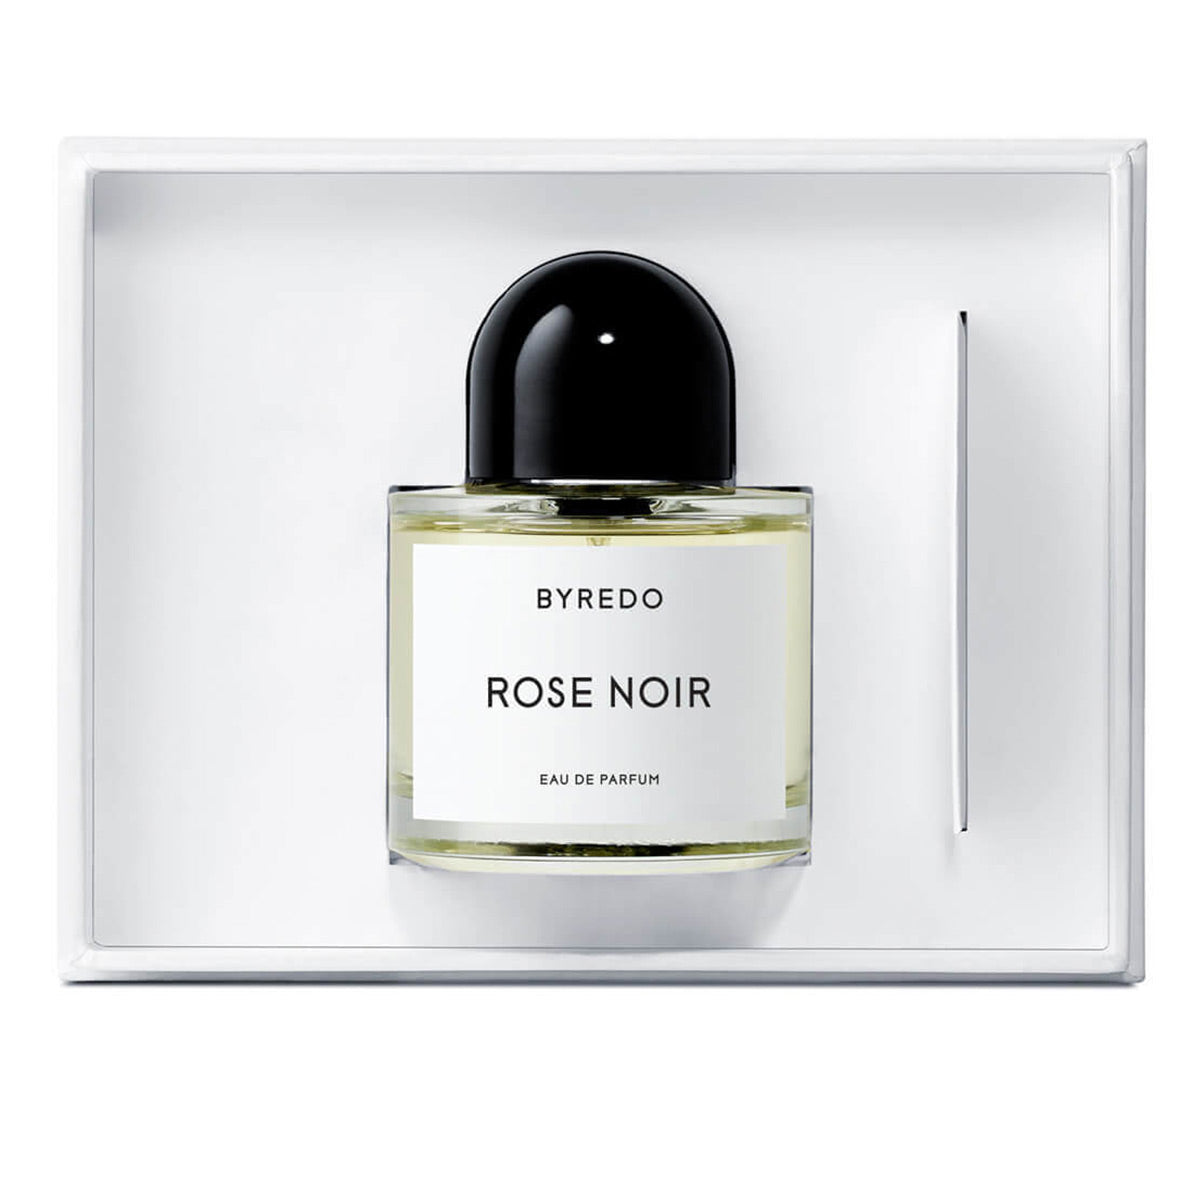 Alternate image of Rose Noir Eau de Parfum